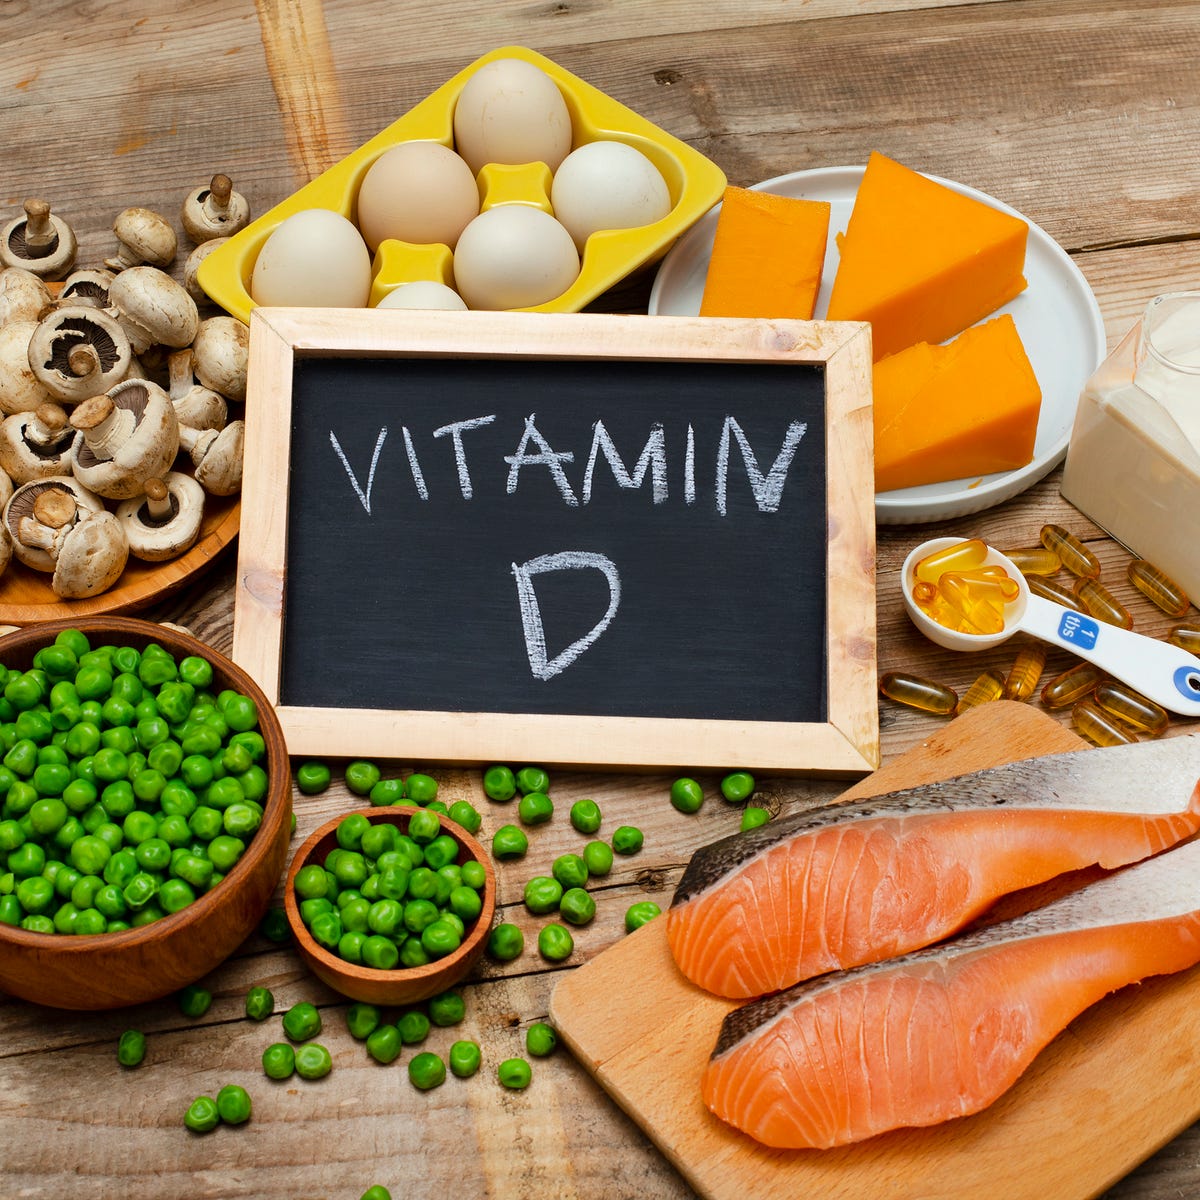 5 Benefits of Vitamin D - CNET